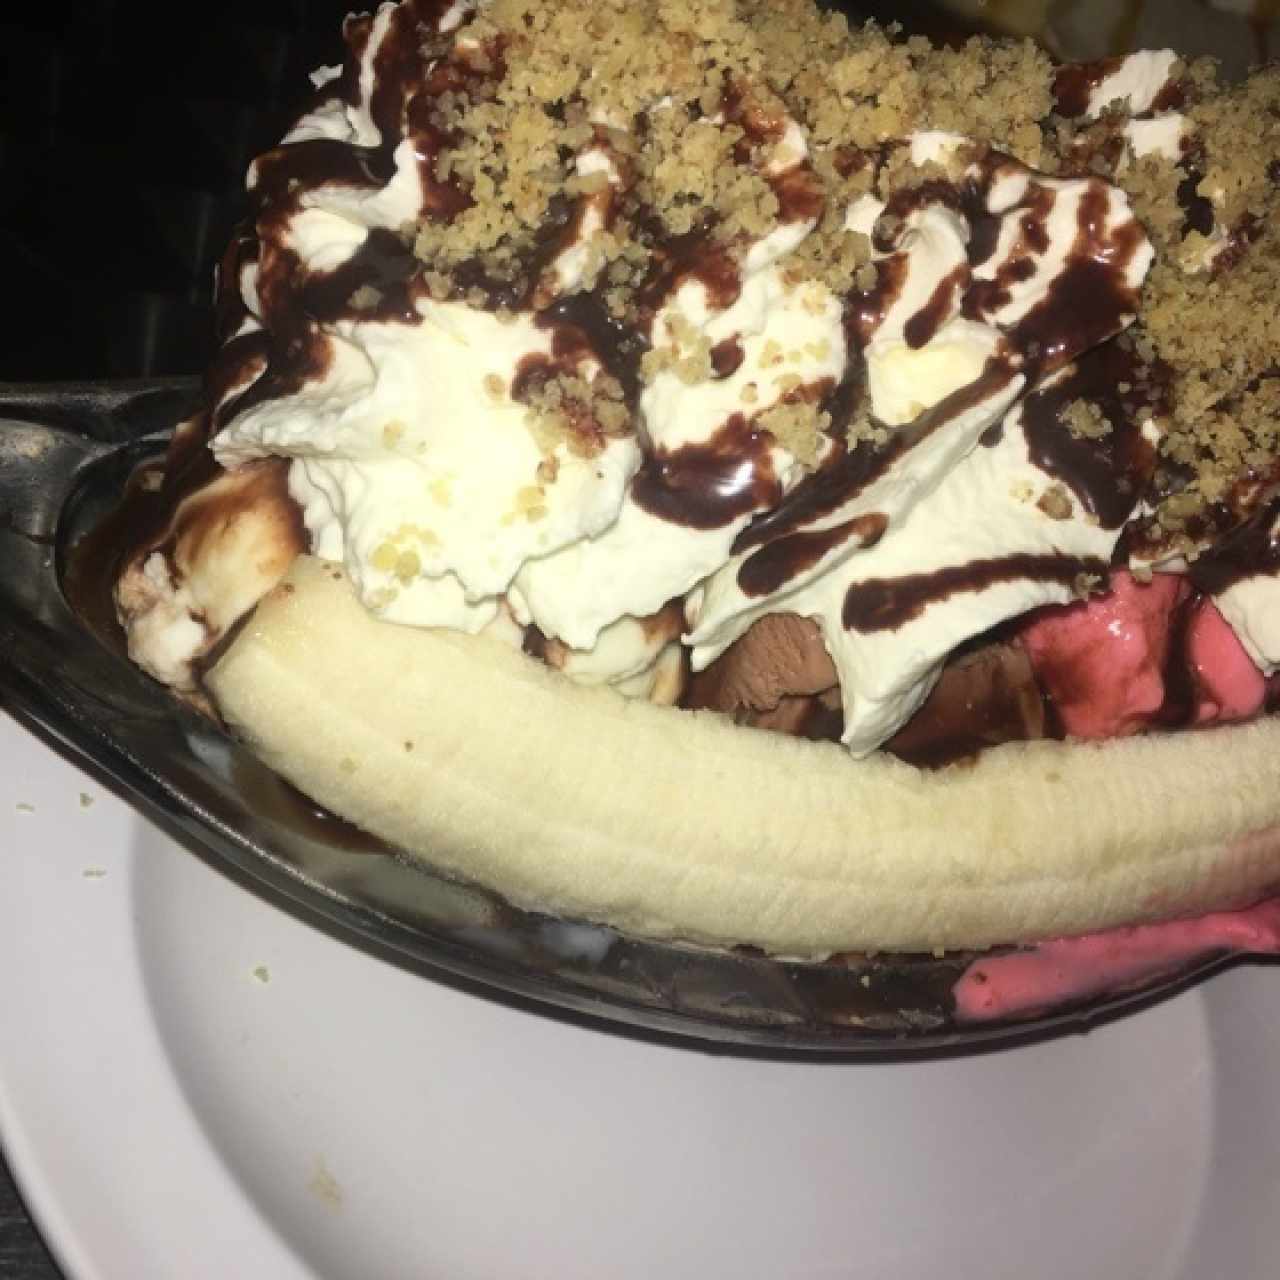 banana split con helado napolitano y sirope de chocolate